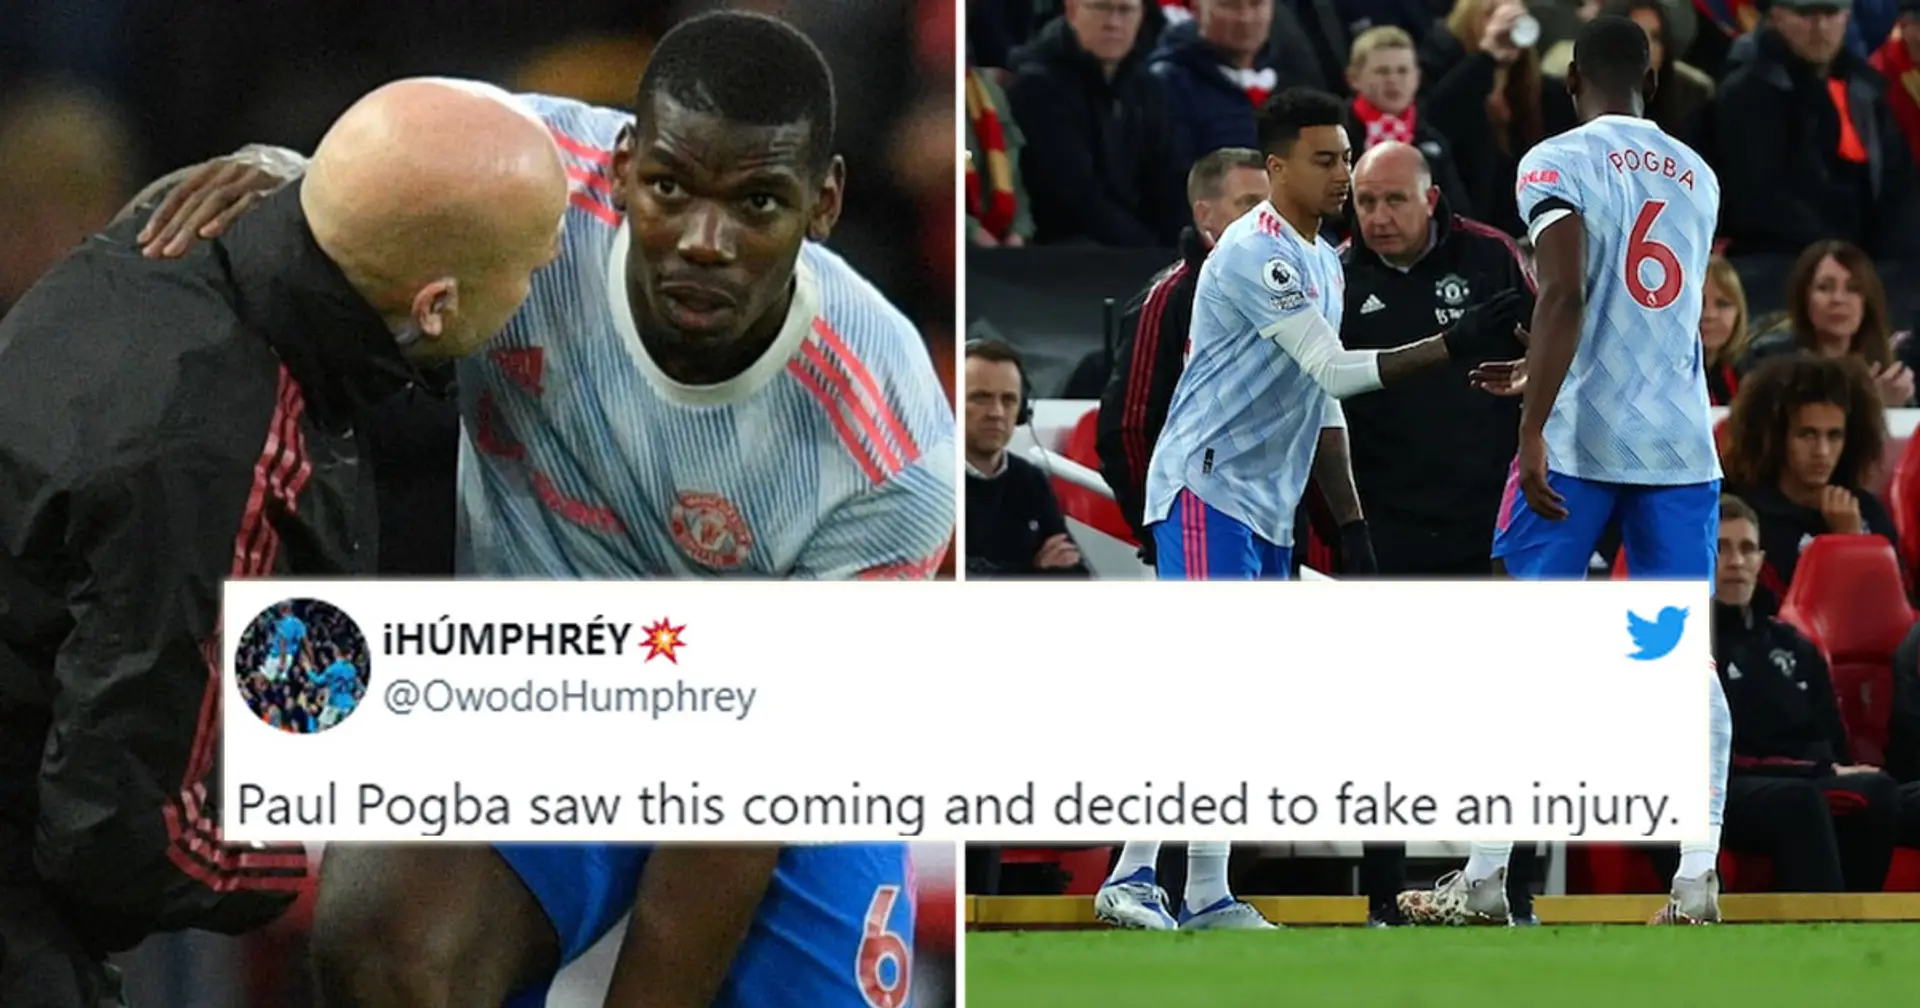 "Il n'avait pas envie d'être sur le terrain pour une raclée": les fans pensent que Pogba a simulé sa blessure contre Liverpool